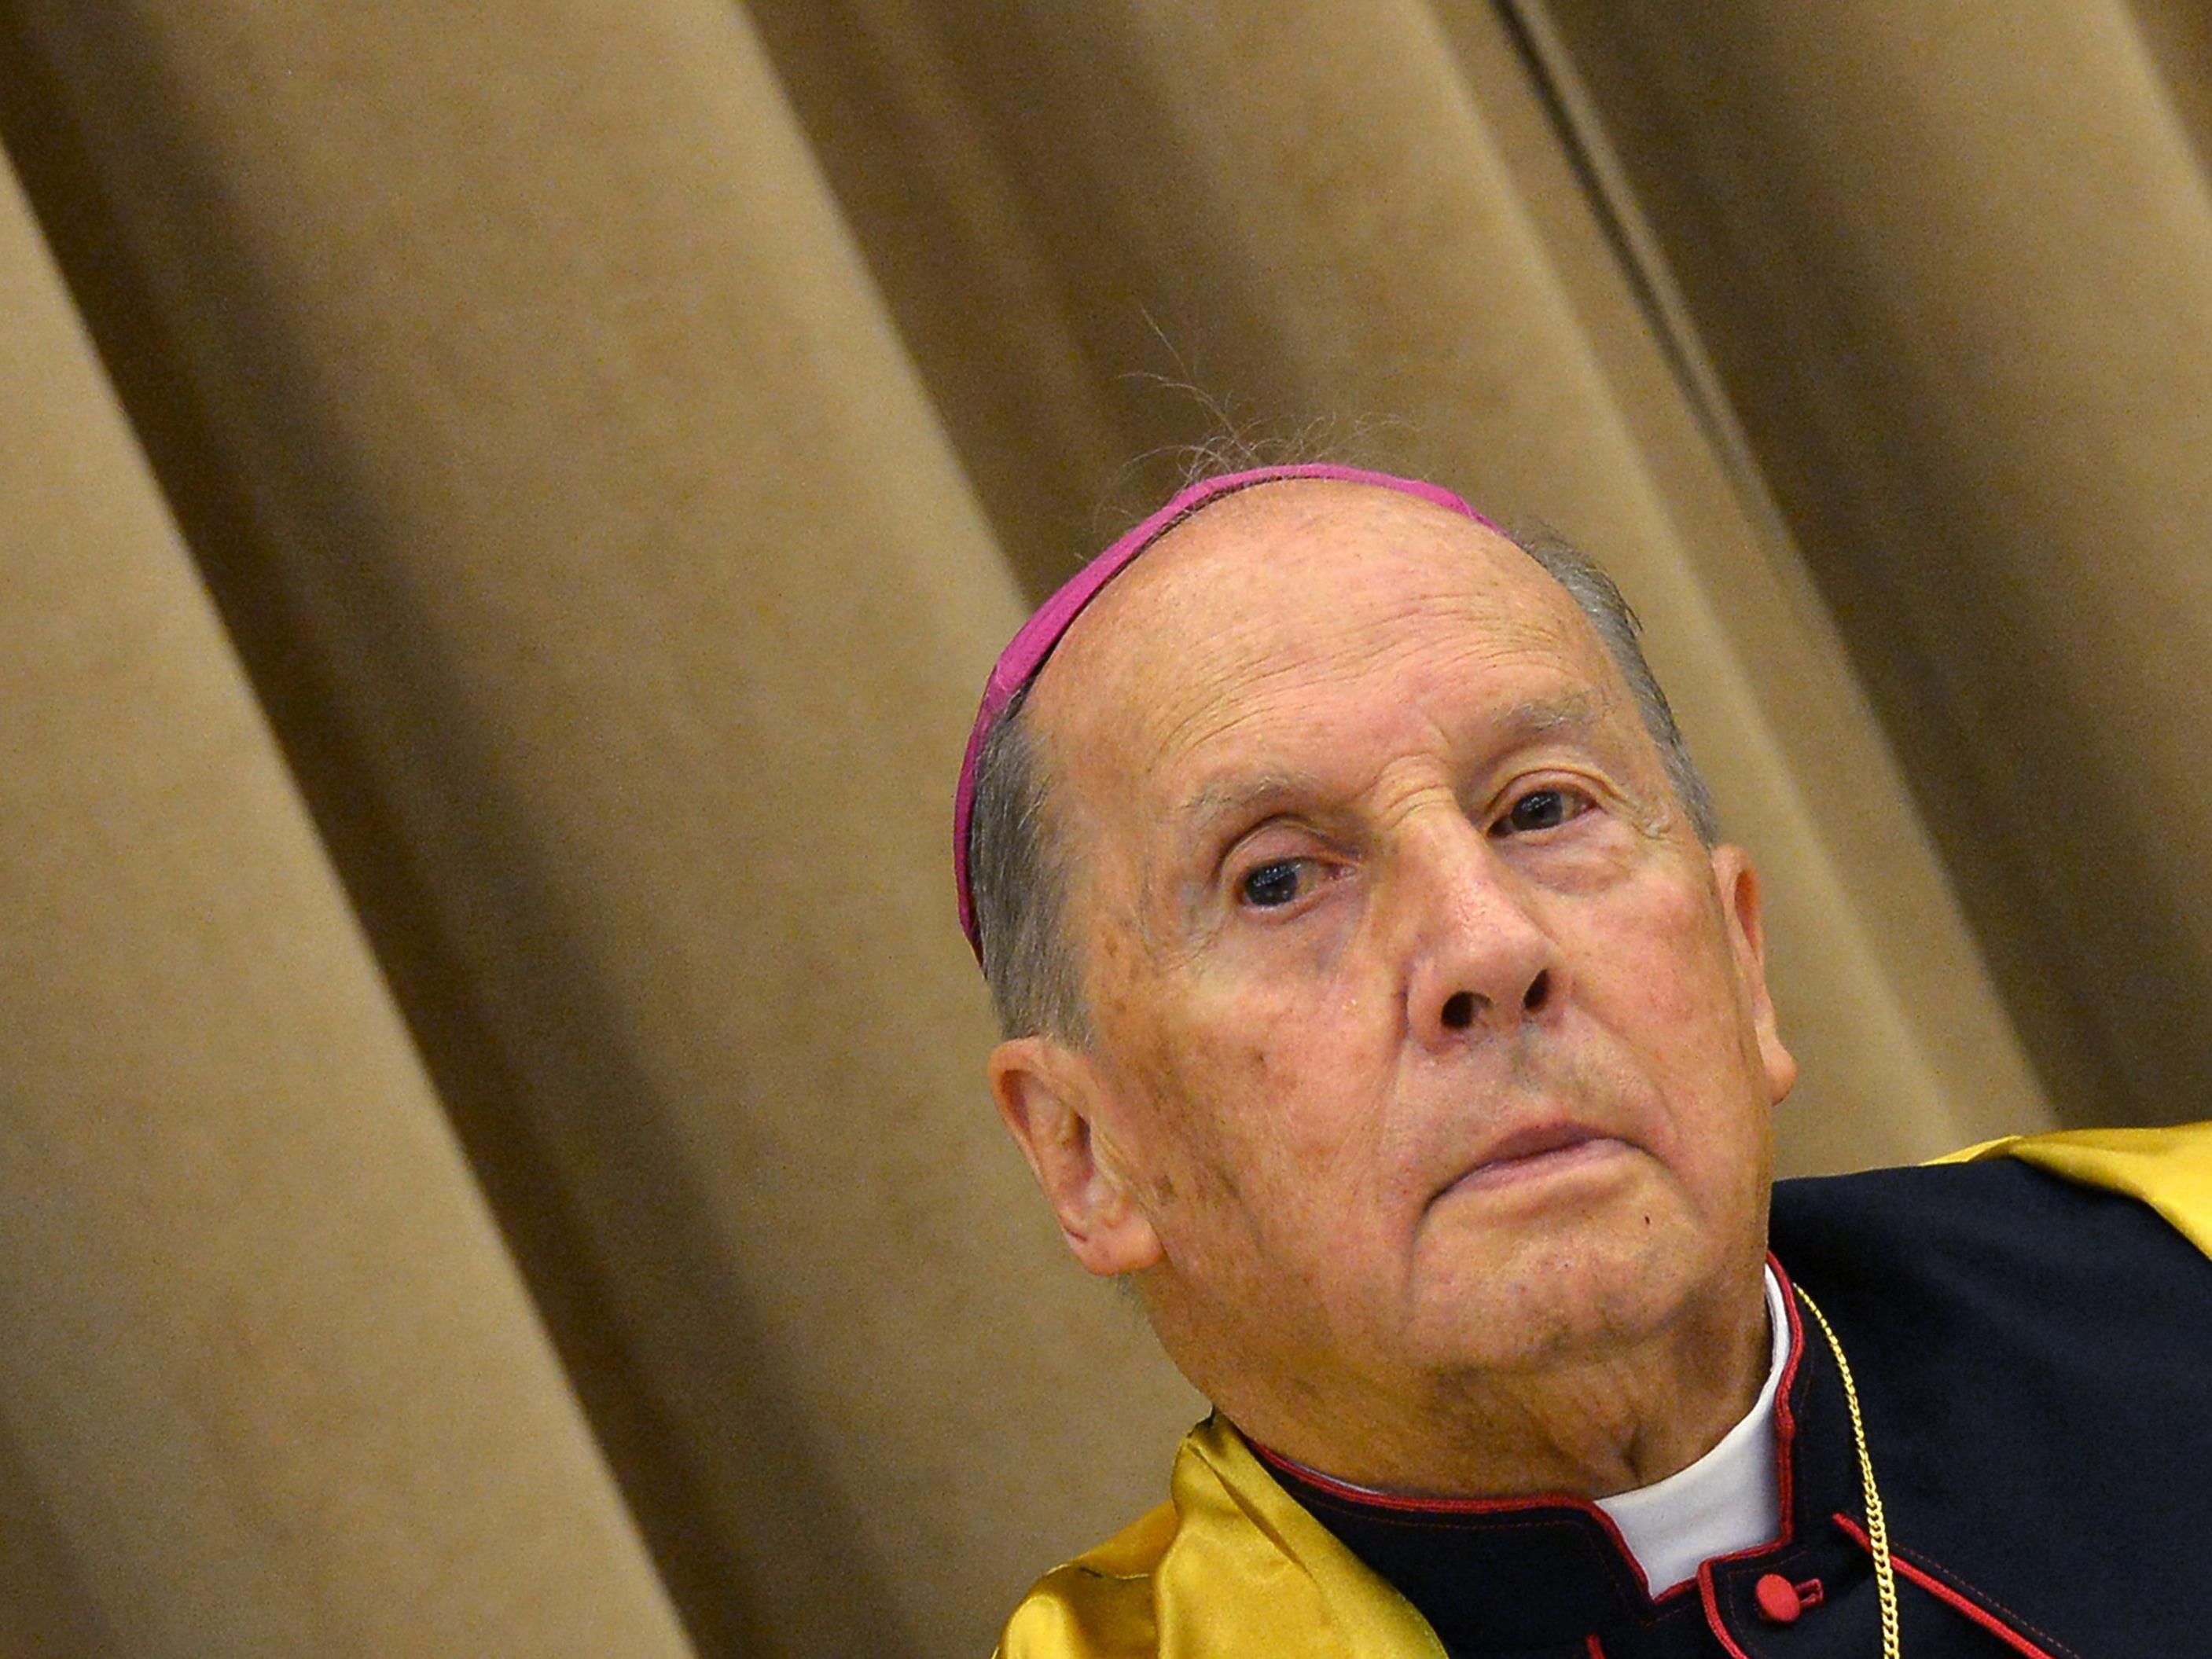 Der bisherige Prälat Javier Echevarria, der seit 1994 im Amt war, war im Dezember im Alter von 84 Jahren gestorben.